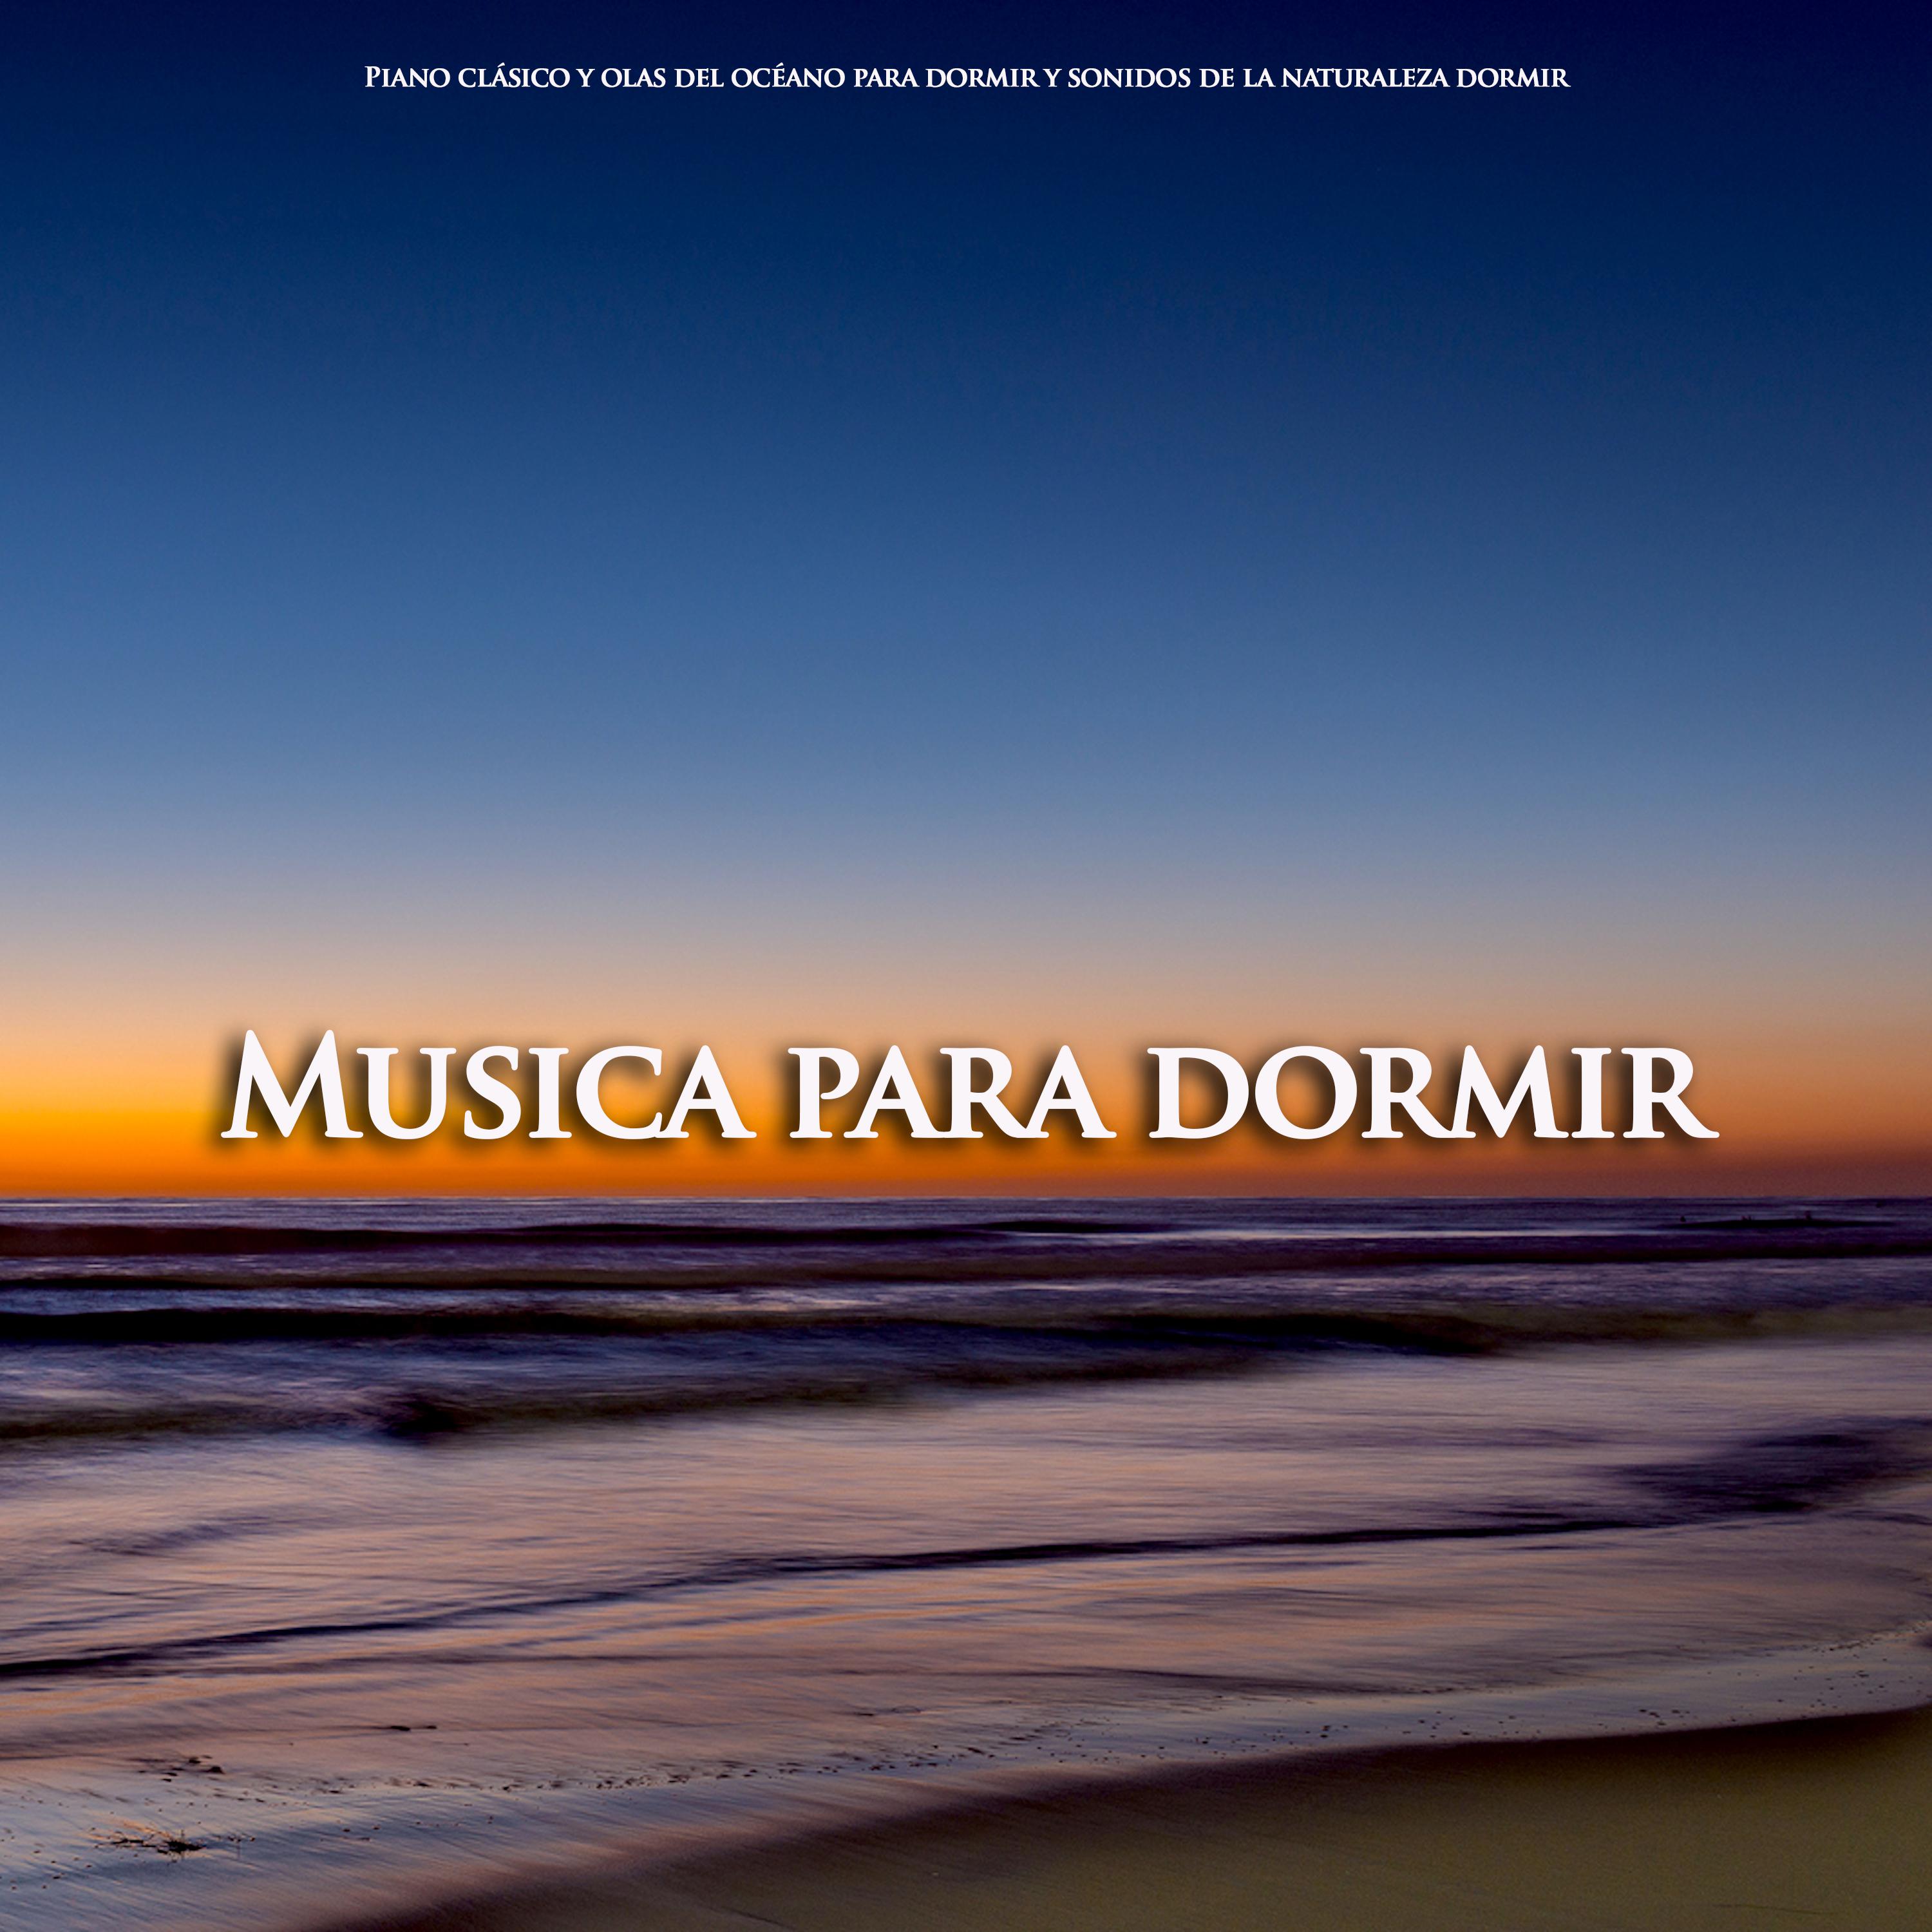 Vocalise, Op.34 - Rachmaninov - Musica para dormir - Olas del océano para dormir - Piano clasico